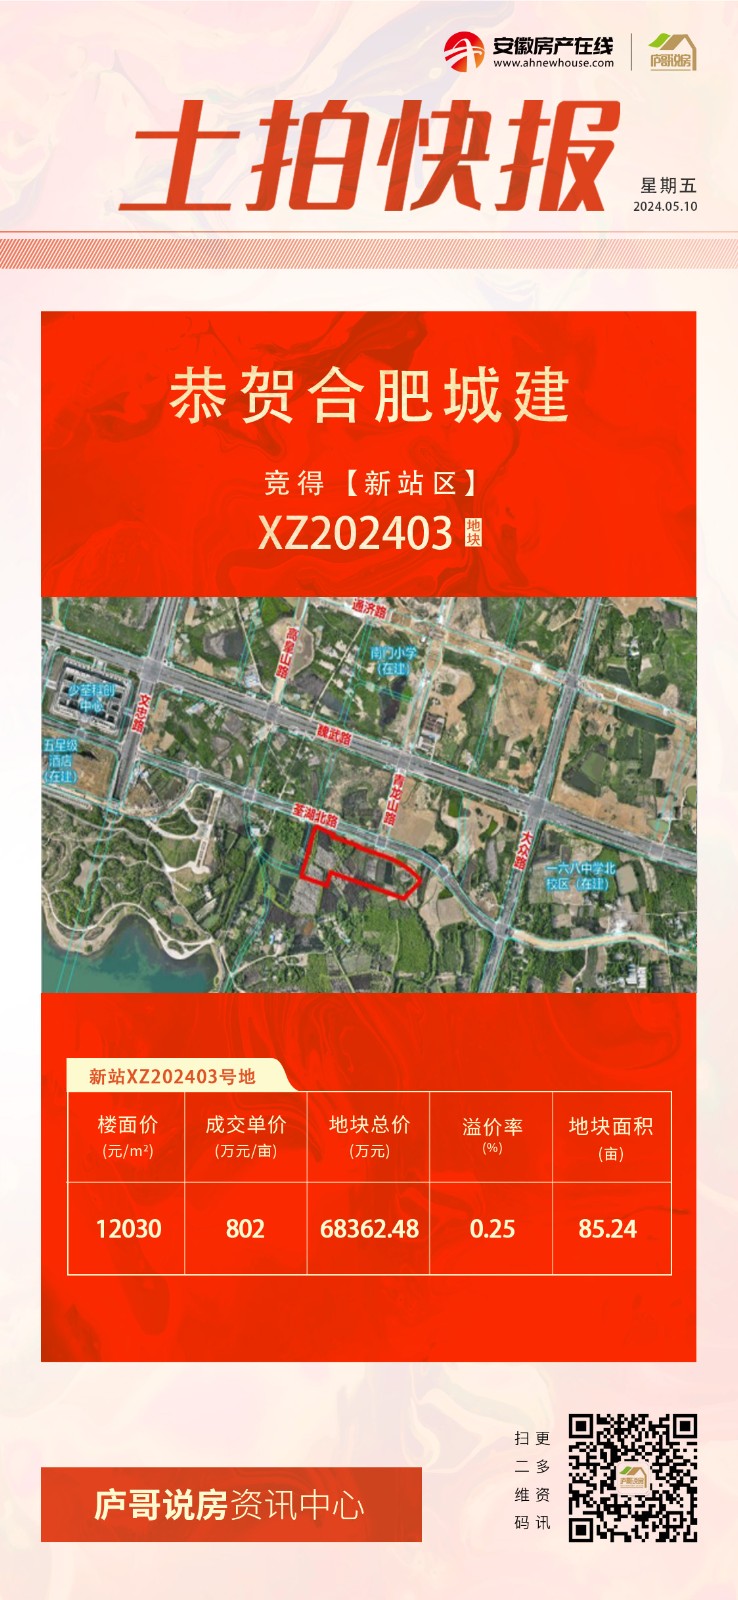 快讯丨合肥城建竞得新站区XZ202403号地块